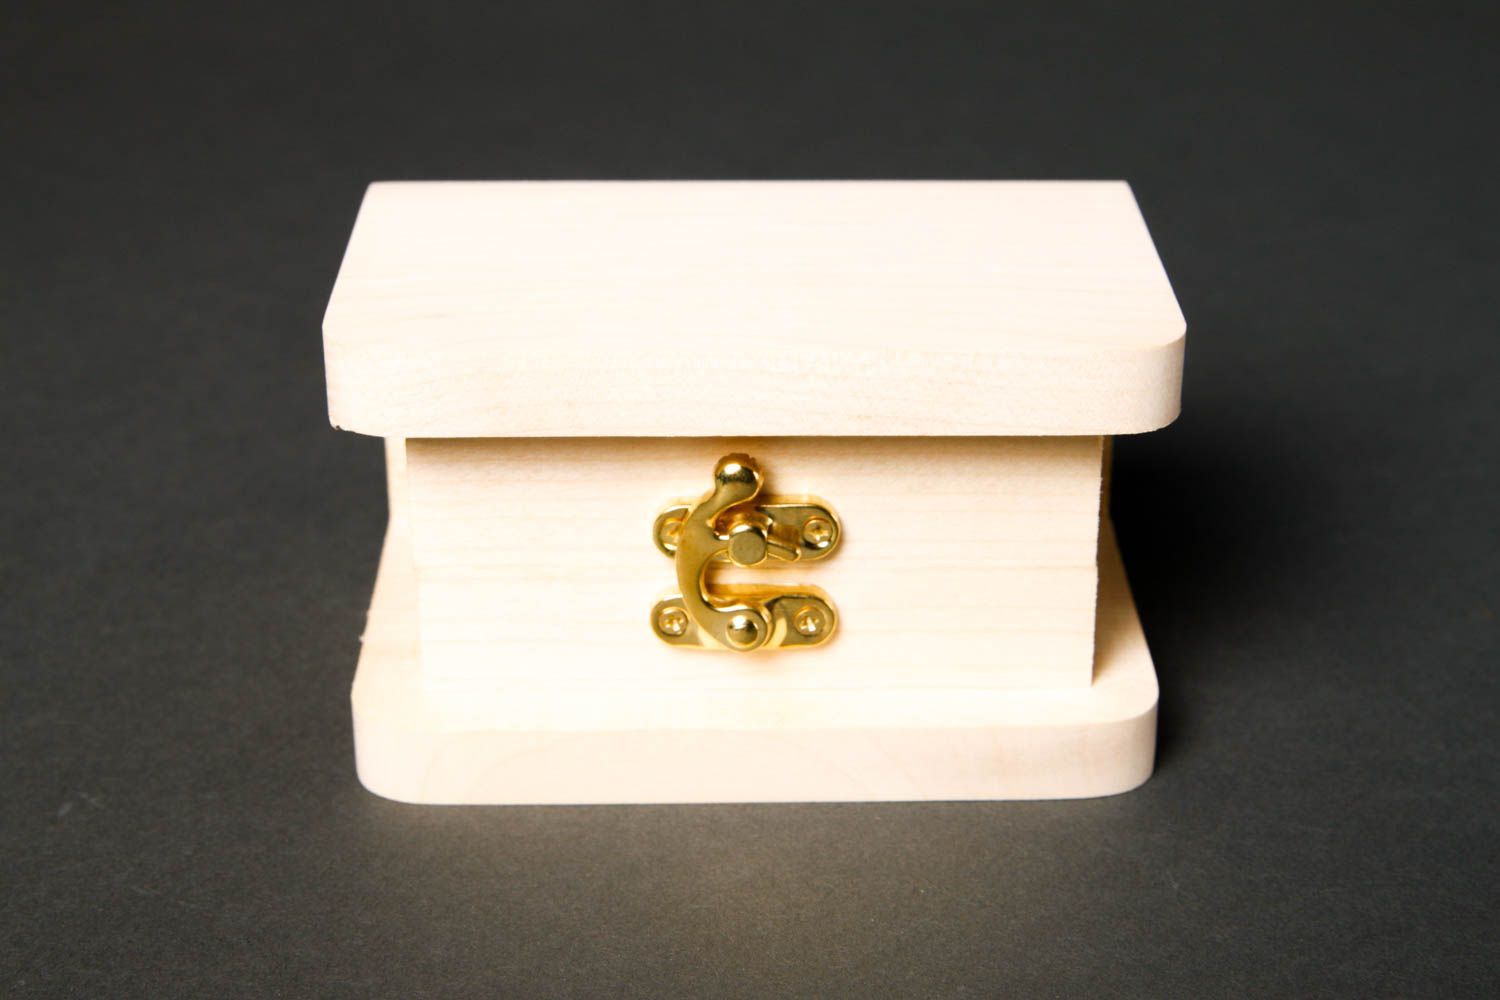 Cute handmade wooden blank box jewelry box design art materials art supplies photo 3